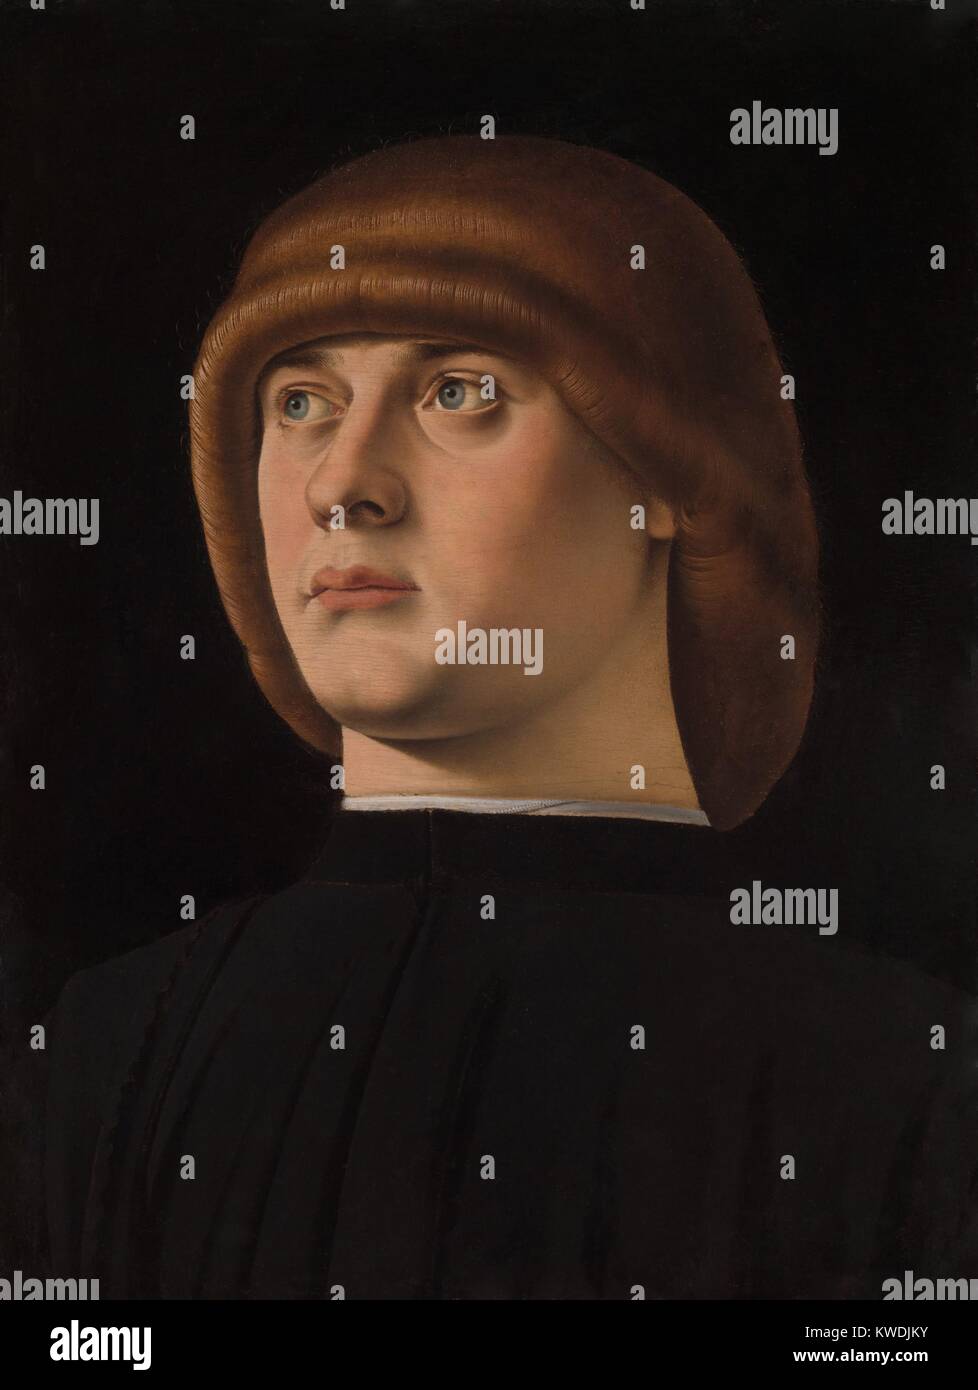 Porträt eines jungen Mannes, die durch Jacometto, 1480 s, italienische Renaissance Malerei, Öl auf Holz. Die unverwechselbare Frisur, zazzera, war modern in Venedig im späten 15. Jahrhundert (BSLOC 2017 16 78) Stockfoto